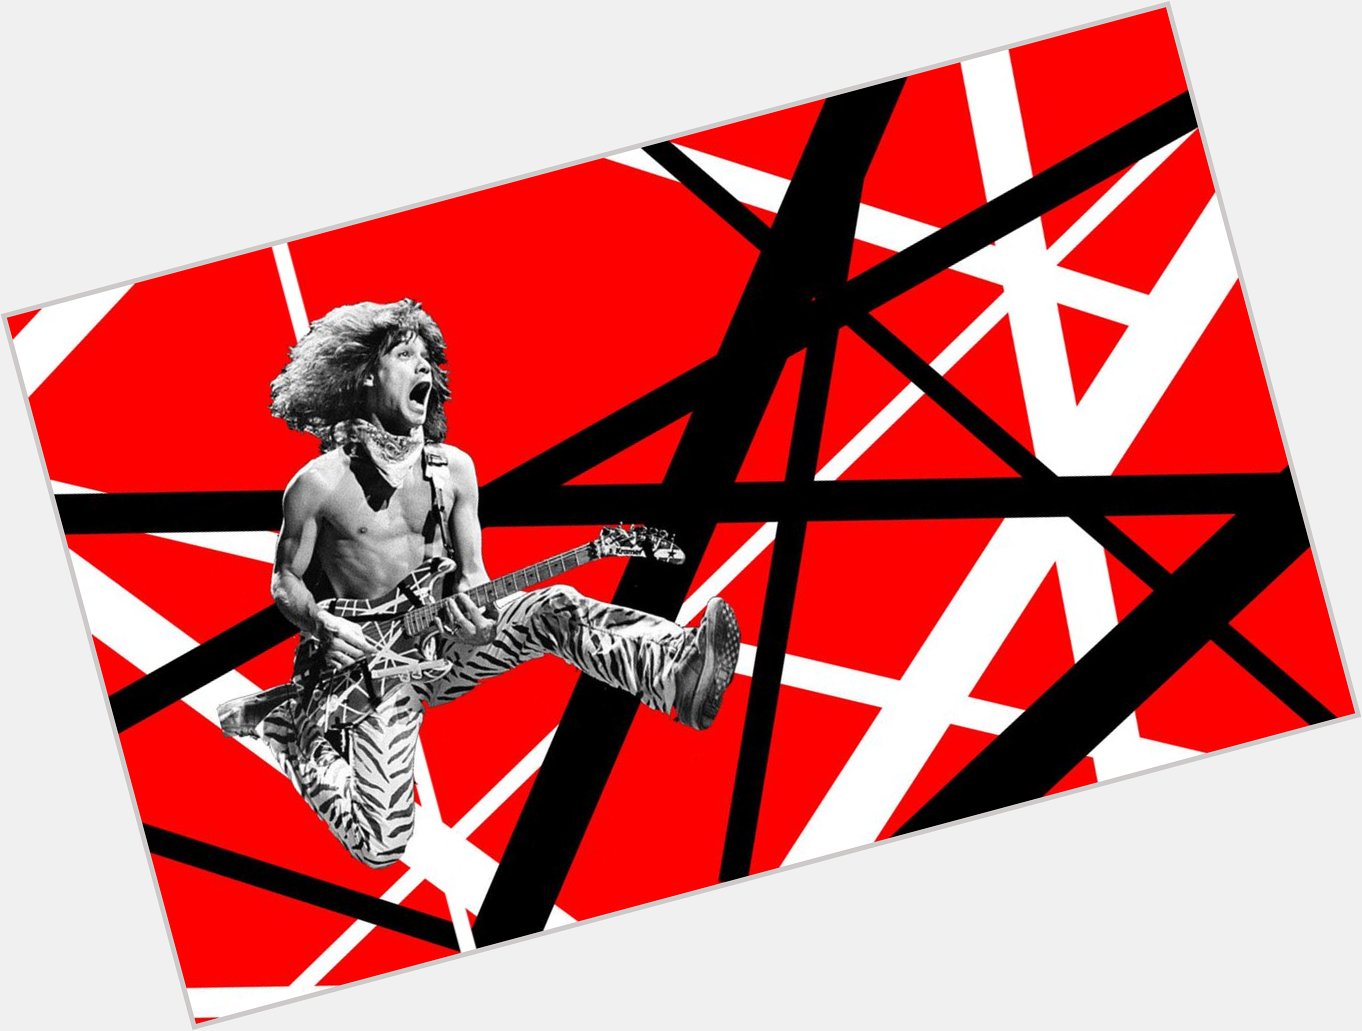 Happy birthday Eddie Van Halen! 